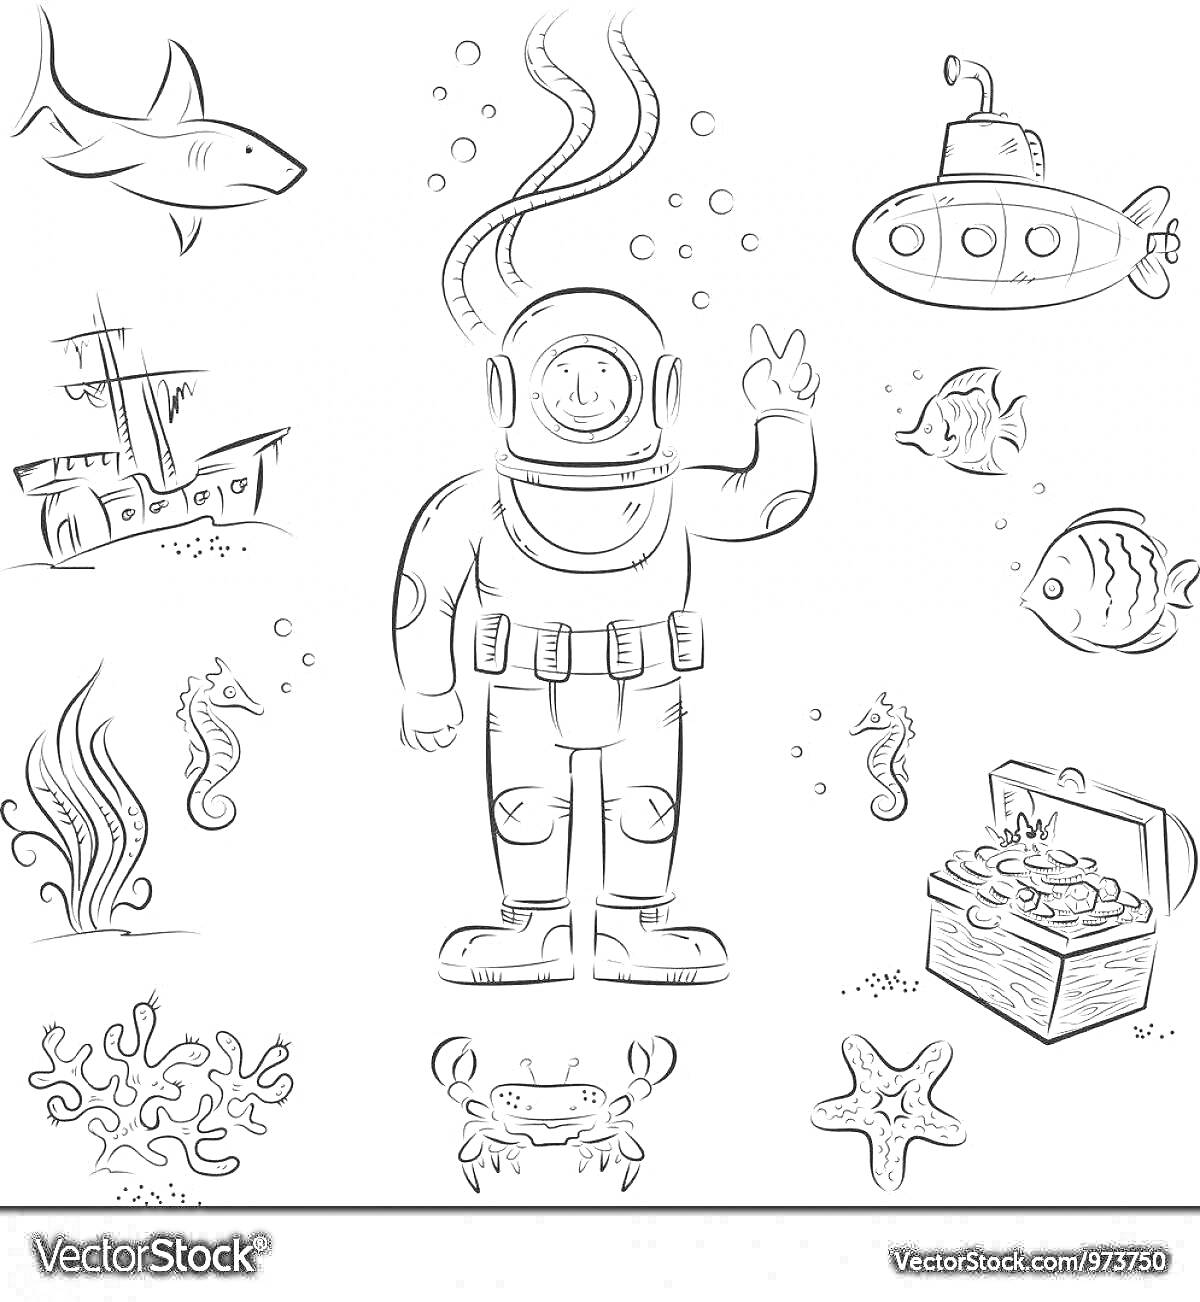 На раскраске изображено: Аквалангист, Водолаз, Подводное плавание, Море, Аквариум, Подводная лодка, Растительность, Морской конек, Затонувший корабль, Краб, Сокровища, Кораллы